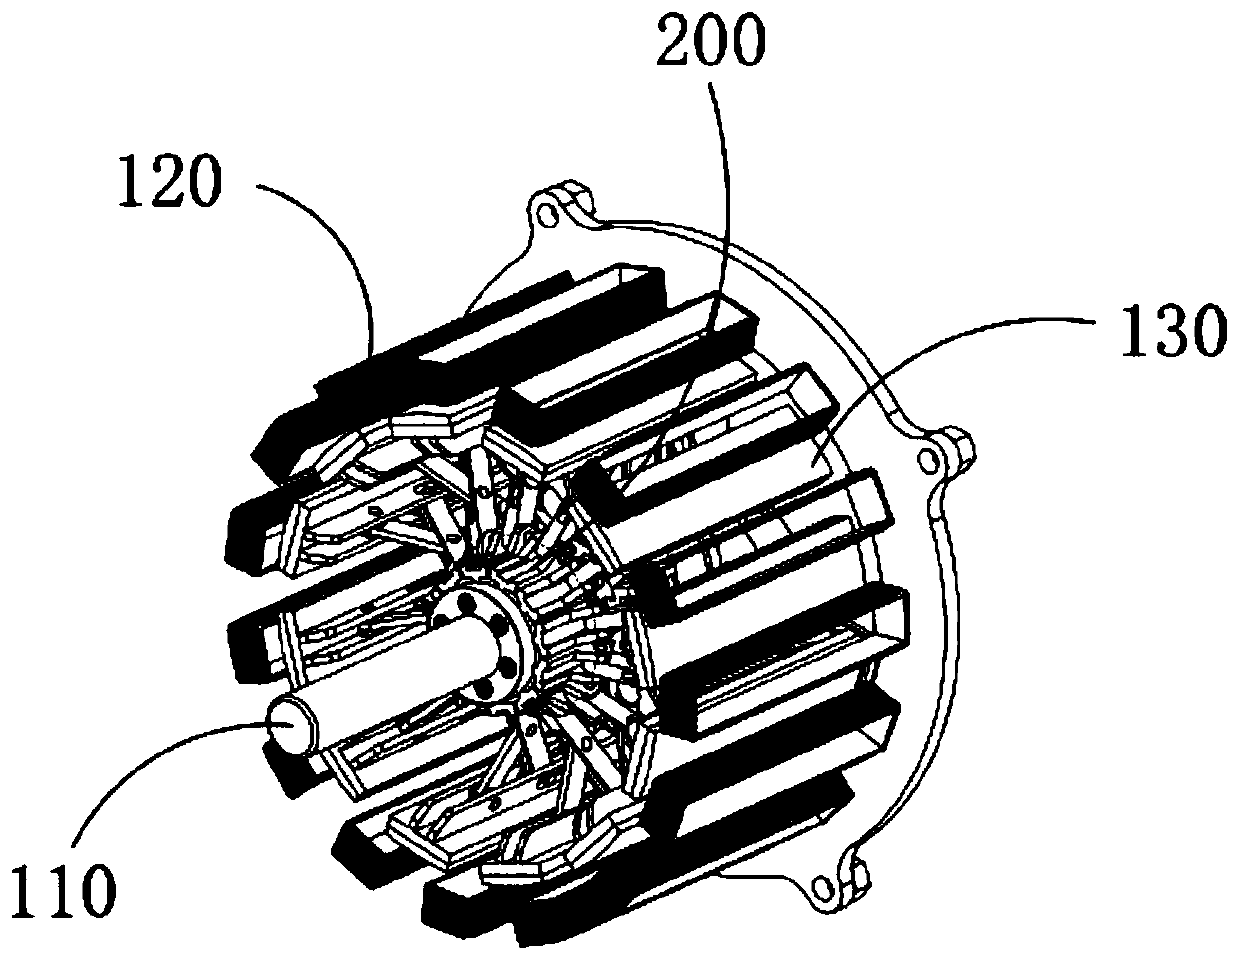 Generator magnetic flux adjusting assembly